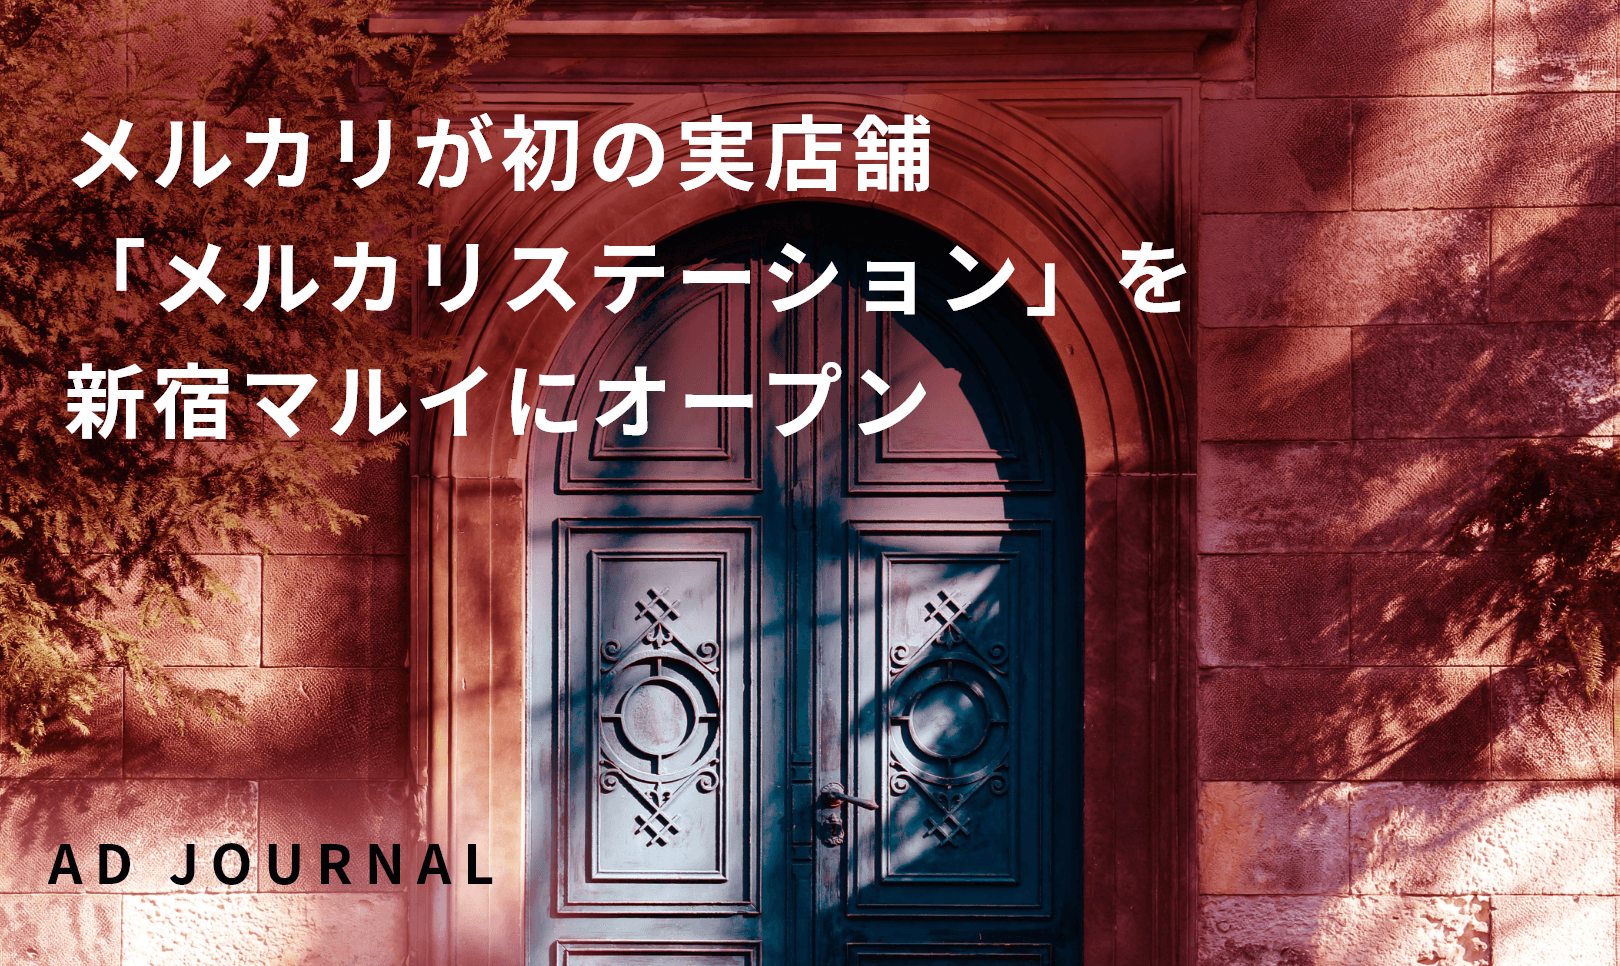 メルカリが初の実店舗「メルカリステーション」を新宿マルイにオープン